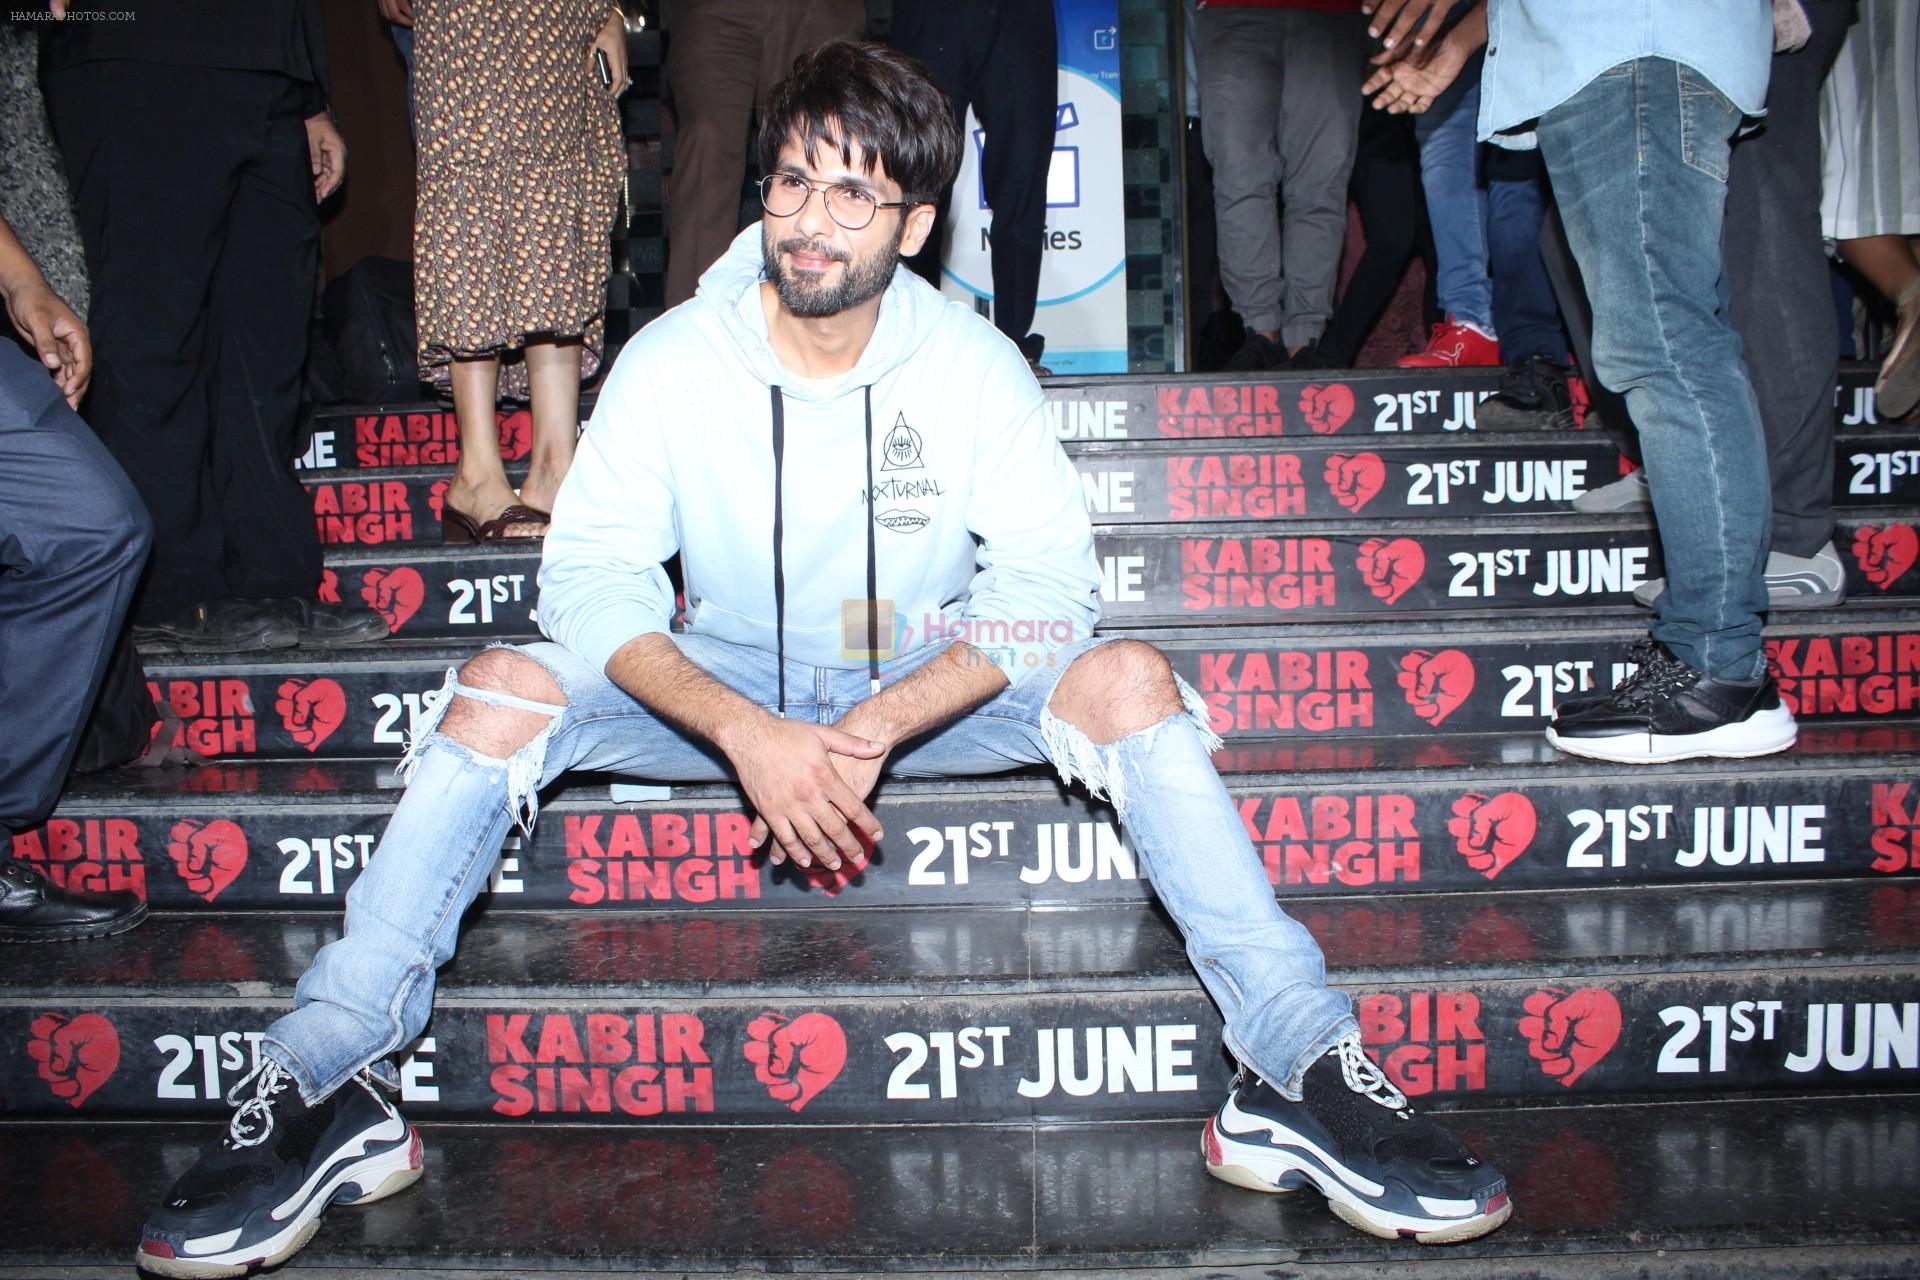 Shahid Kapoor at Kabir Singh screening in pvr icon, andheri on 20th June 2019